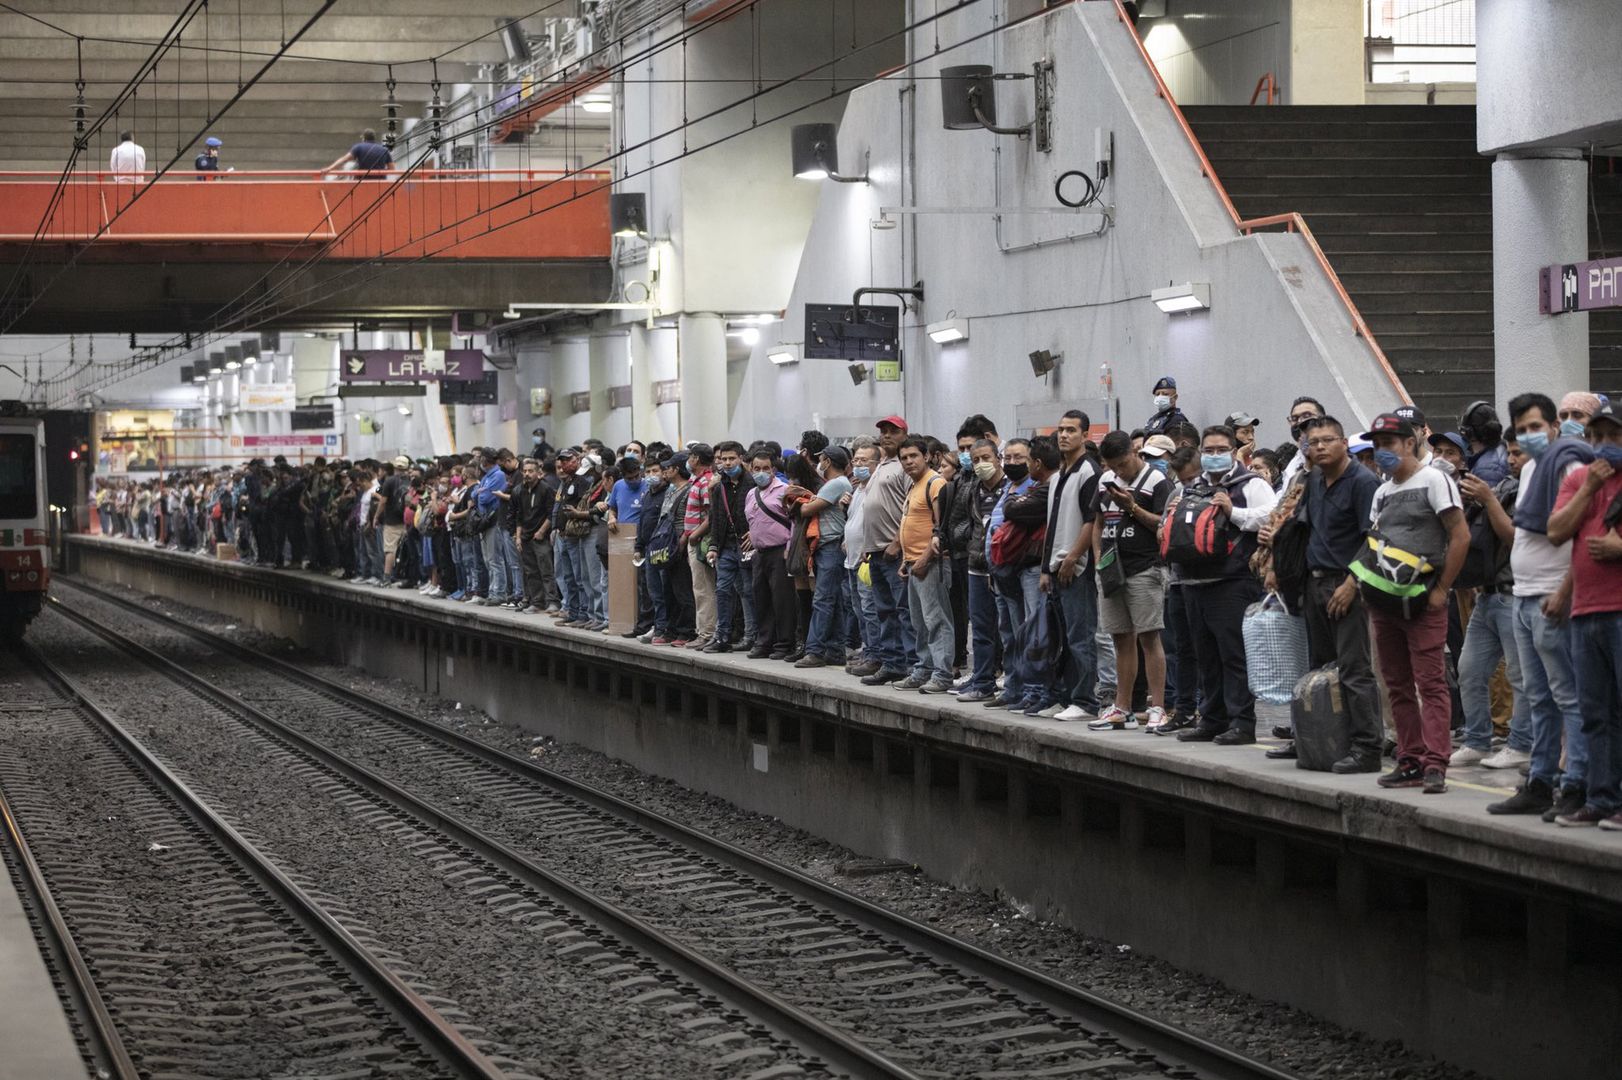 Meksyk. Tłumy w metrze i na ulicach. Pomimo koronawirusa